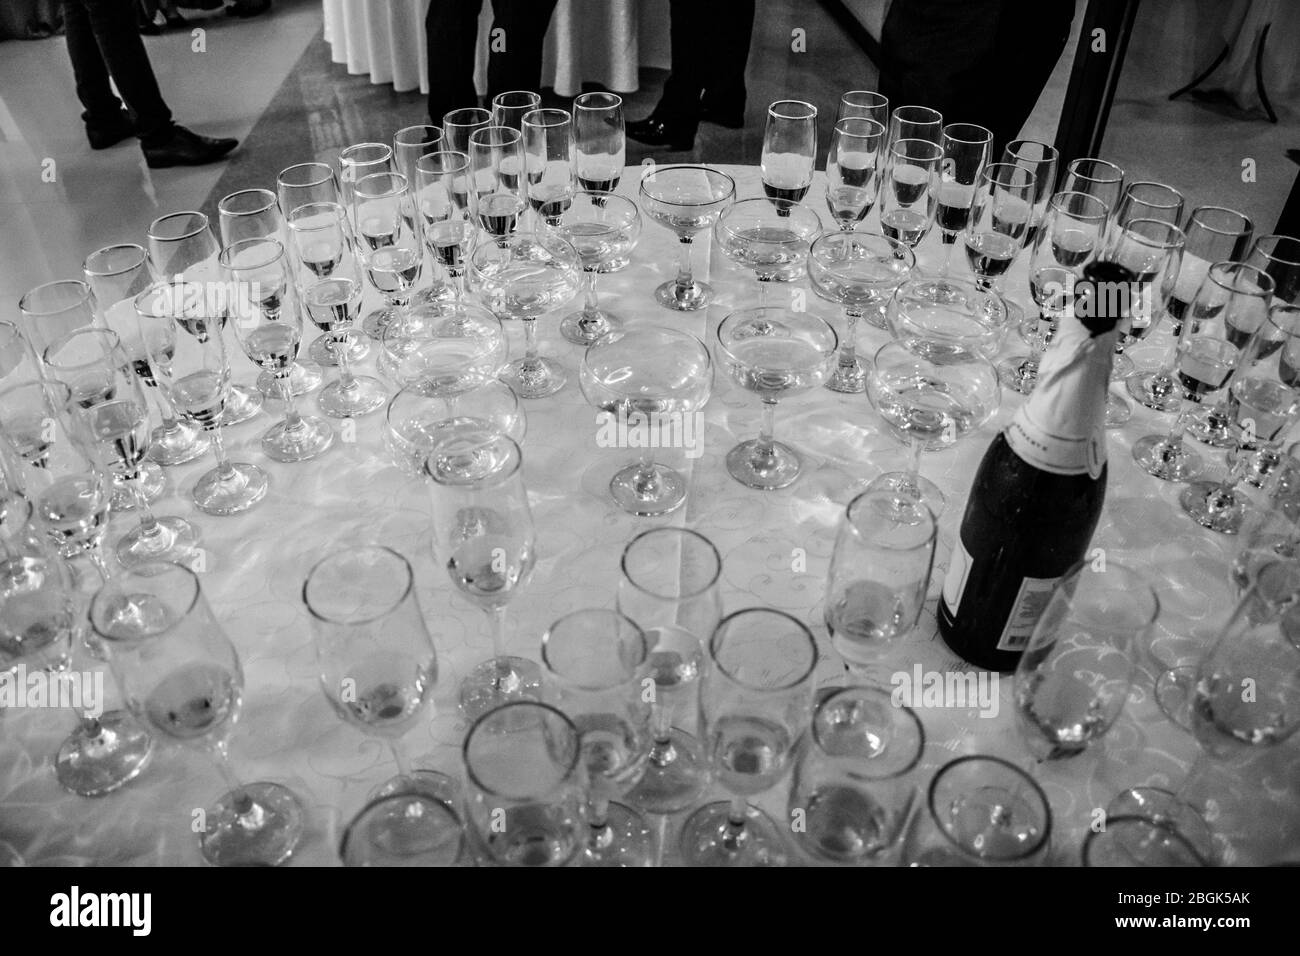 Bals / Roumanie / 27 décembre 2018: Disposition symétrique des verres à champagne sur la table lors du mariage en noir et blanc Banque D'Images